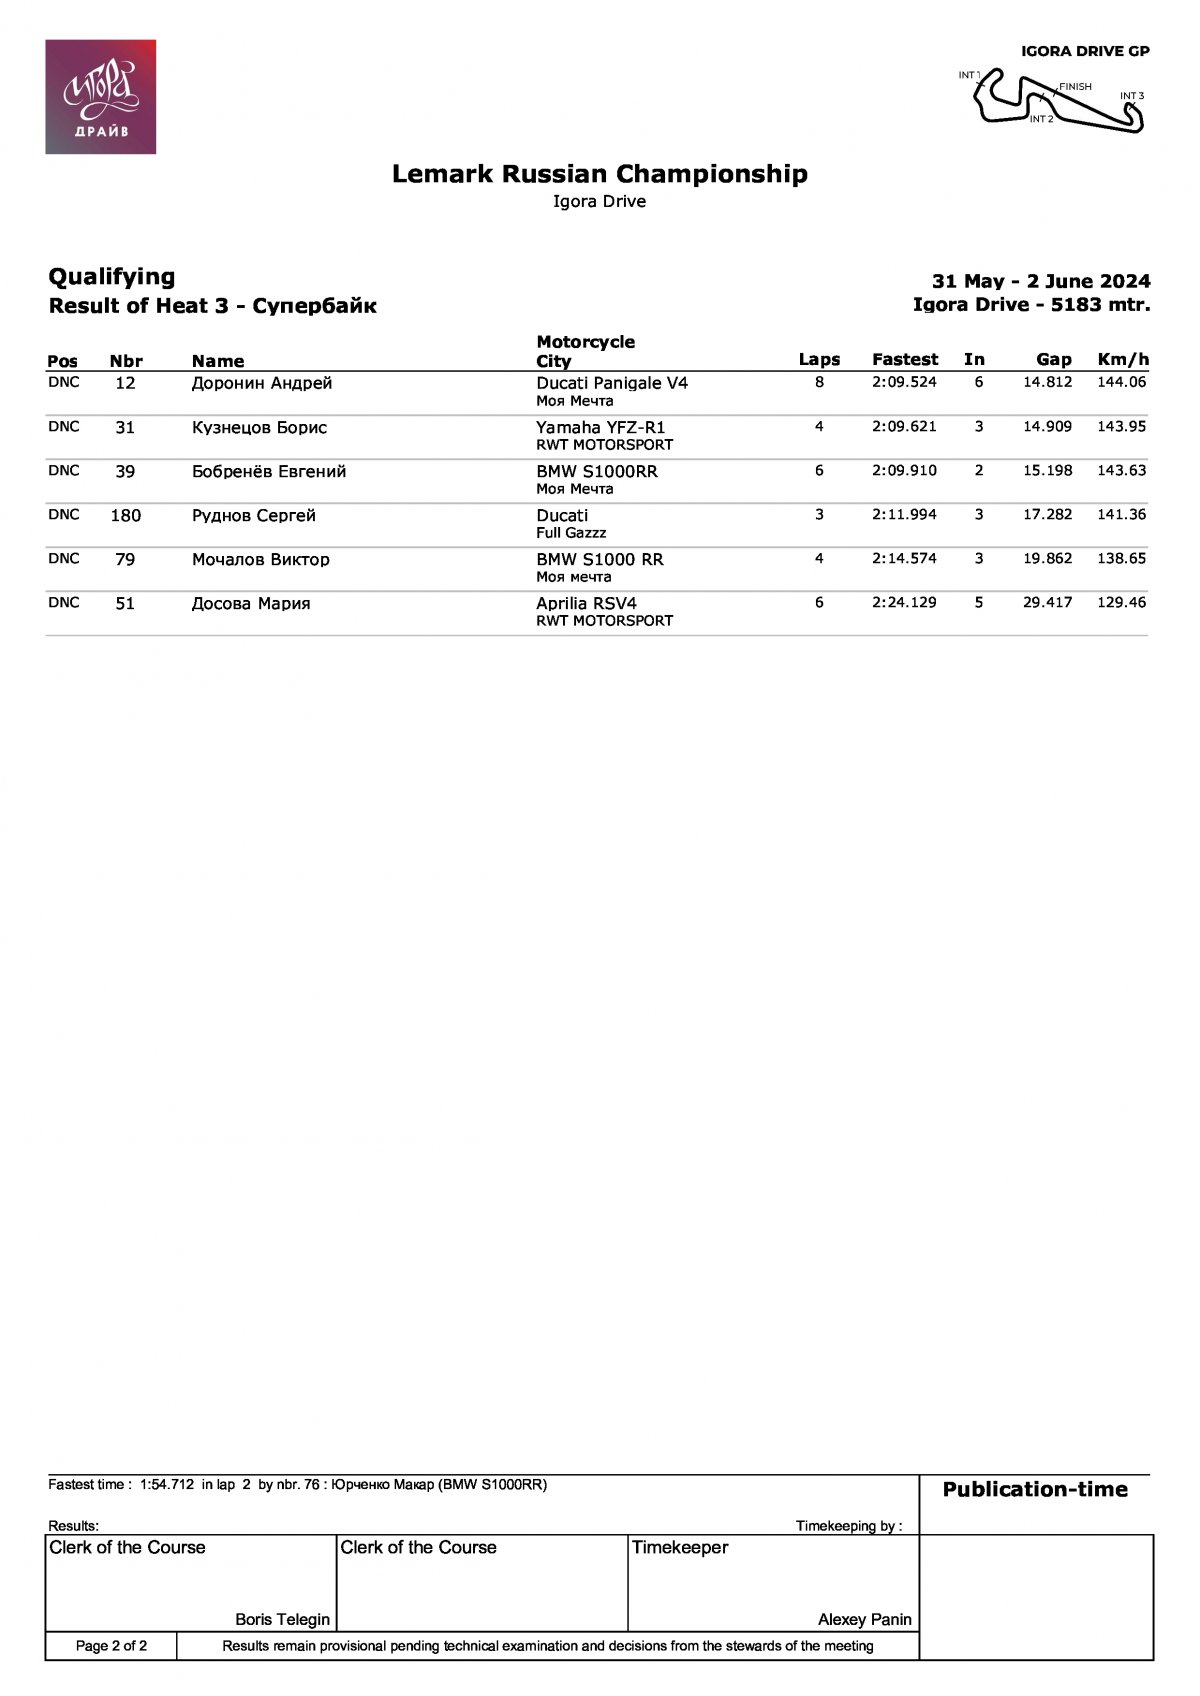 LEMARC Чемпионат России по кольцевым гонкам: Результаты квалификации в классе Супербайк